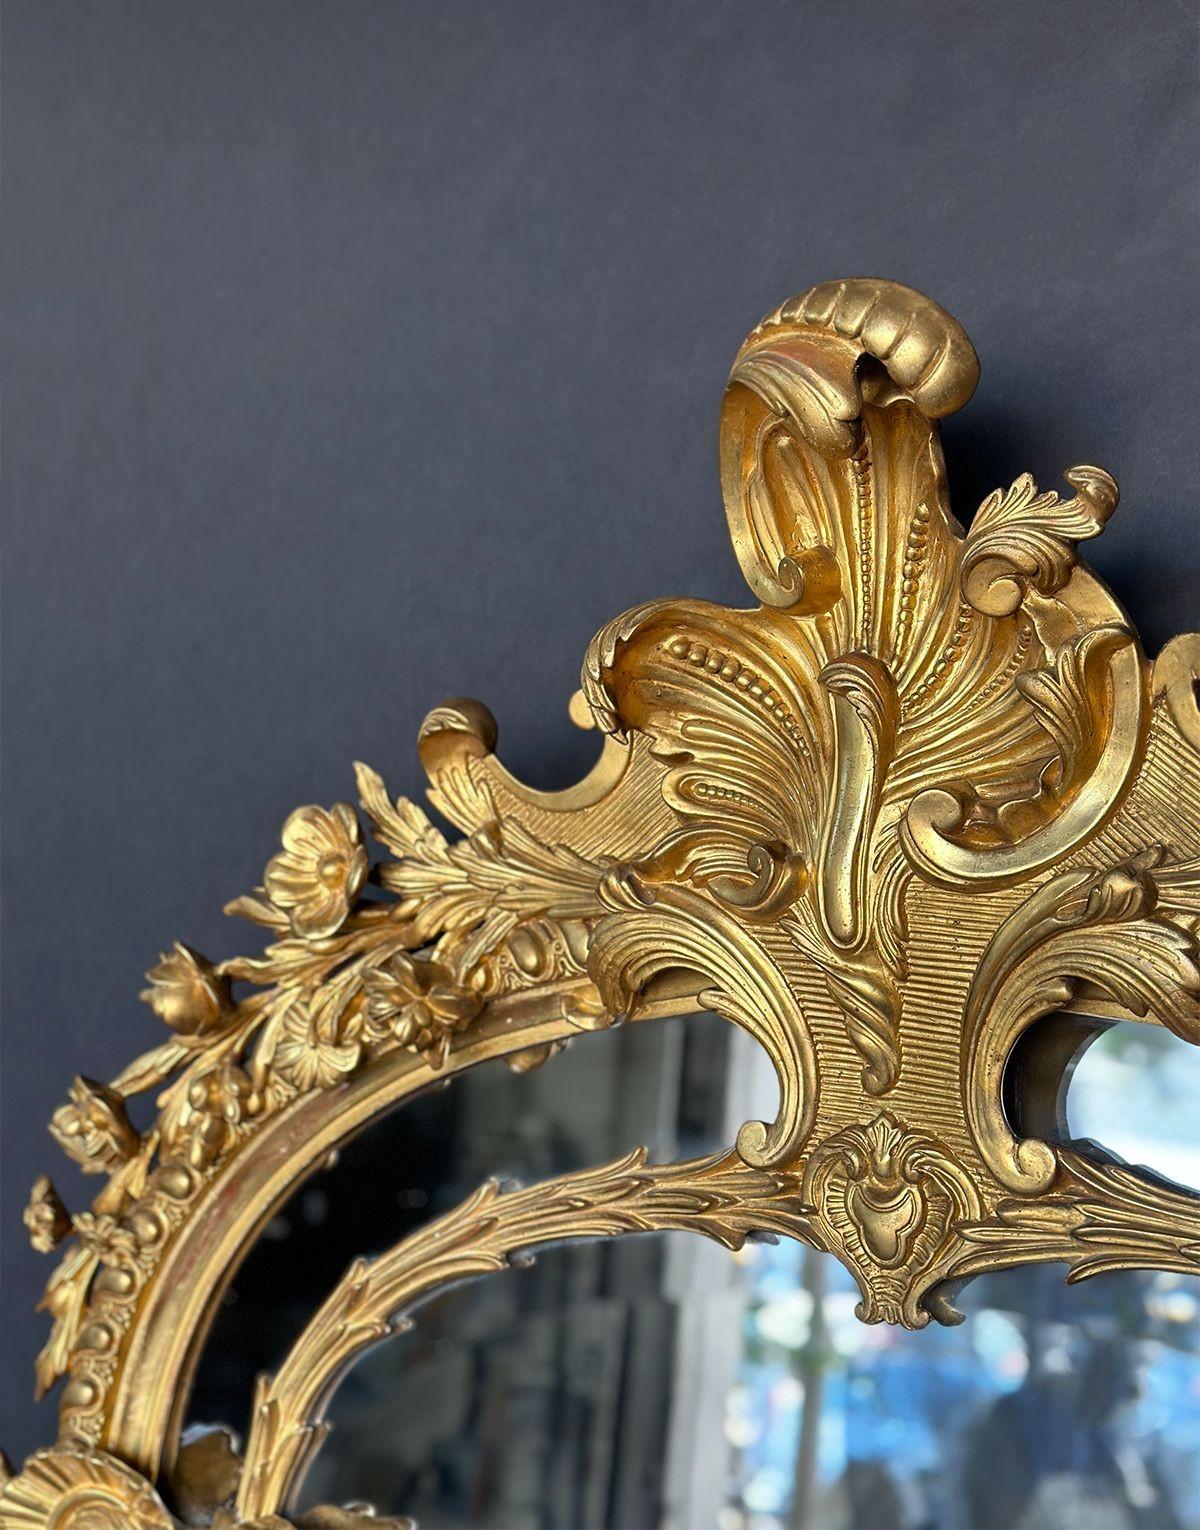 Elegant miroir en bois doré sculpté à la main avec des détails botaniques qui s'entrelacent avec deux créatures à l'allure mythique de chaque côté. Biseauté avec un miroir de 1